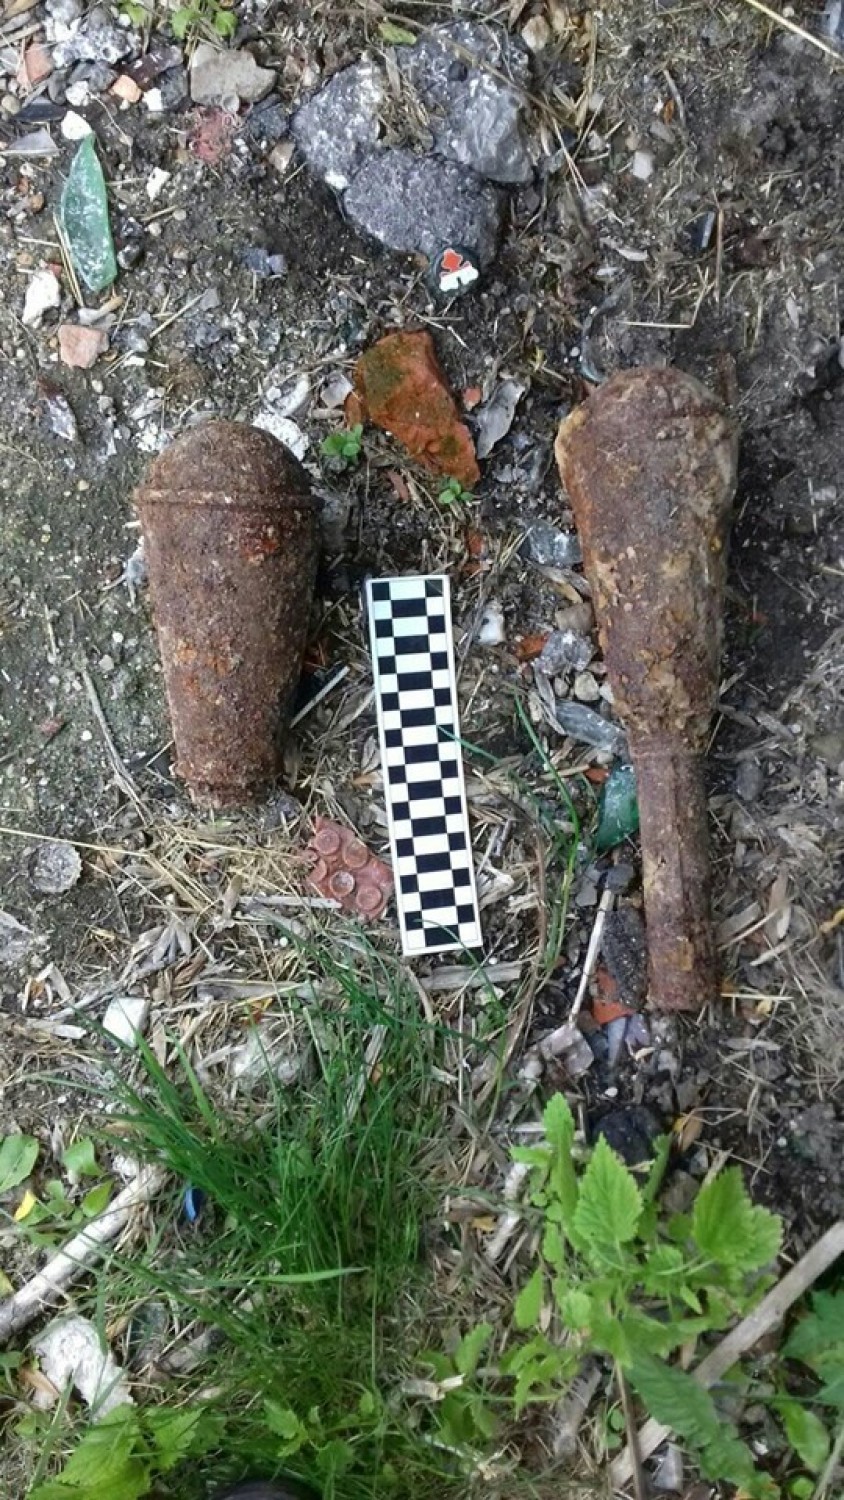 Radzieckie ręczne granaty przeciwpancerne były powodem wczorajszej ewakuacji w Zgorzelcu